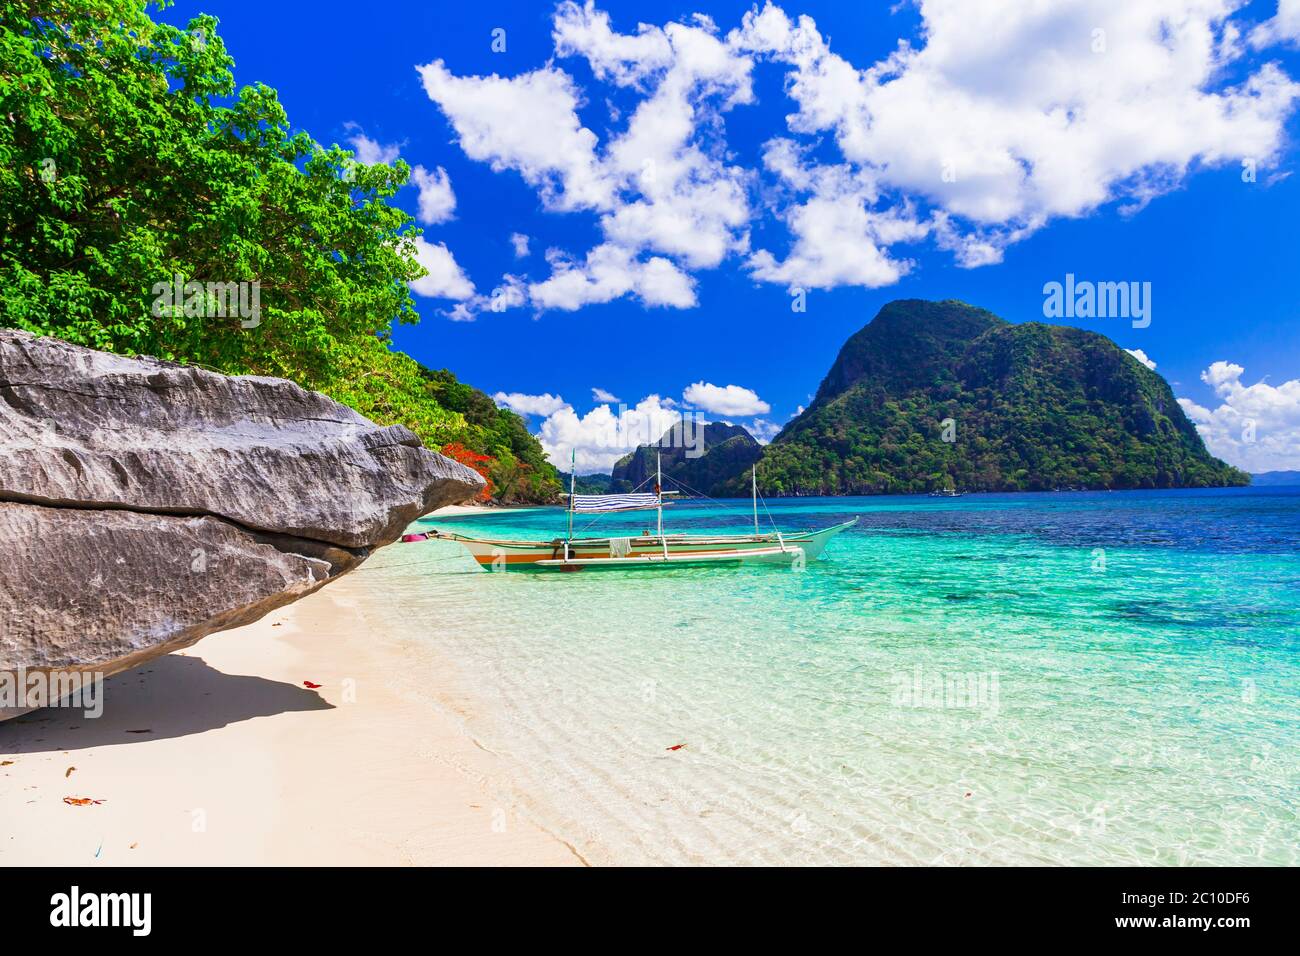 Natura paradisiaca e bellezza selvaggia esotica dell'isola unica di Palawan. Splendido El Nido. Filippine Foto Stock